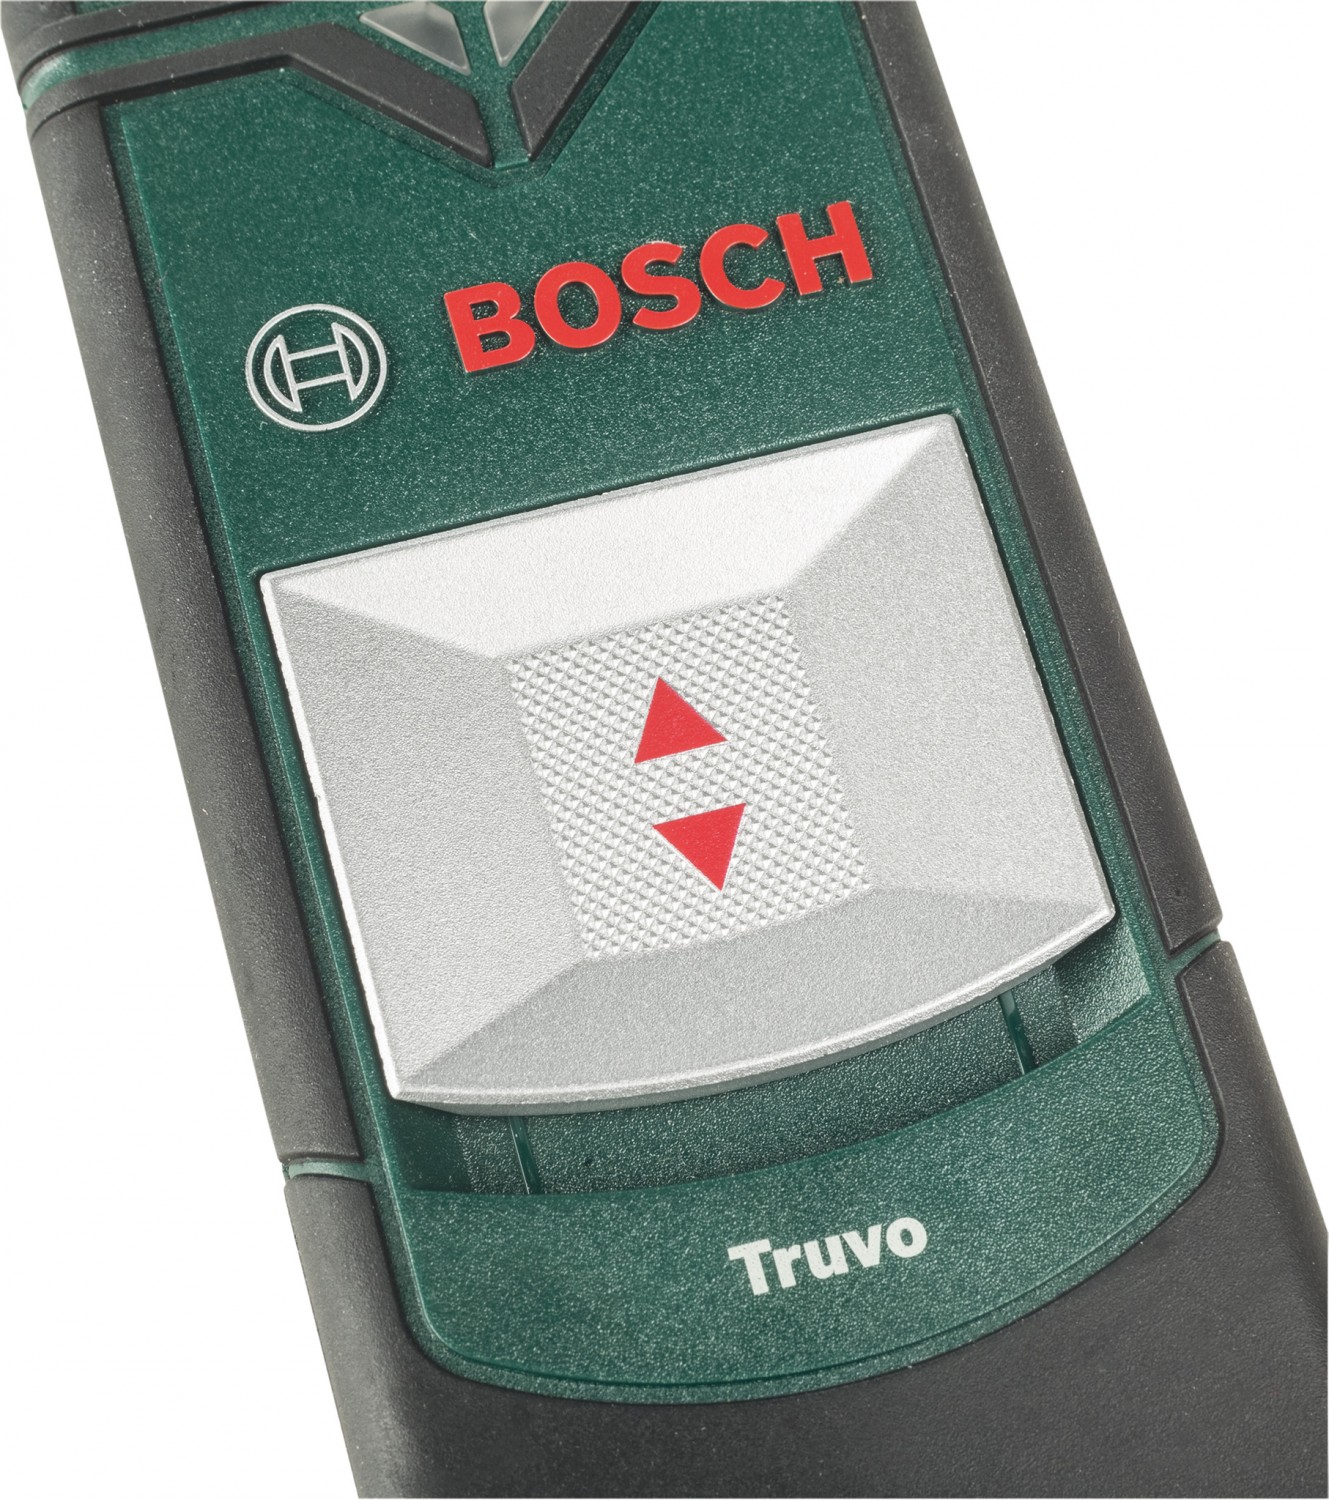 Multi Messgeräte Bosch Truvo im Test, Bild 2